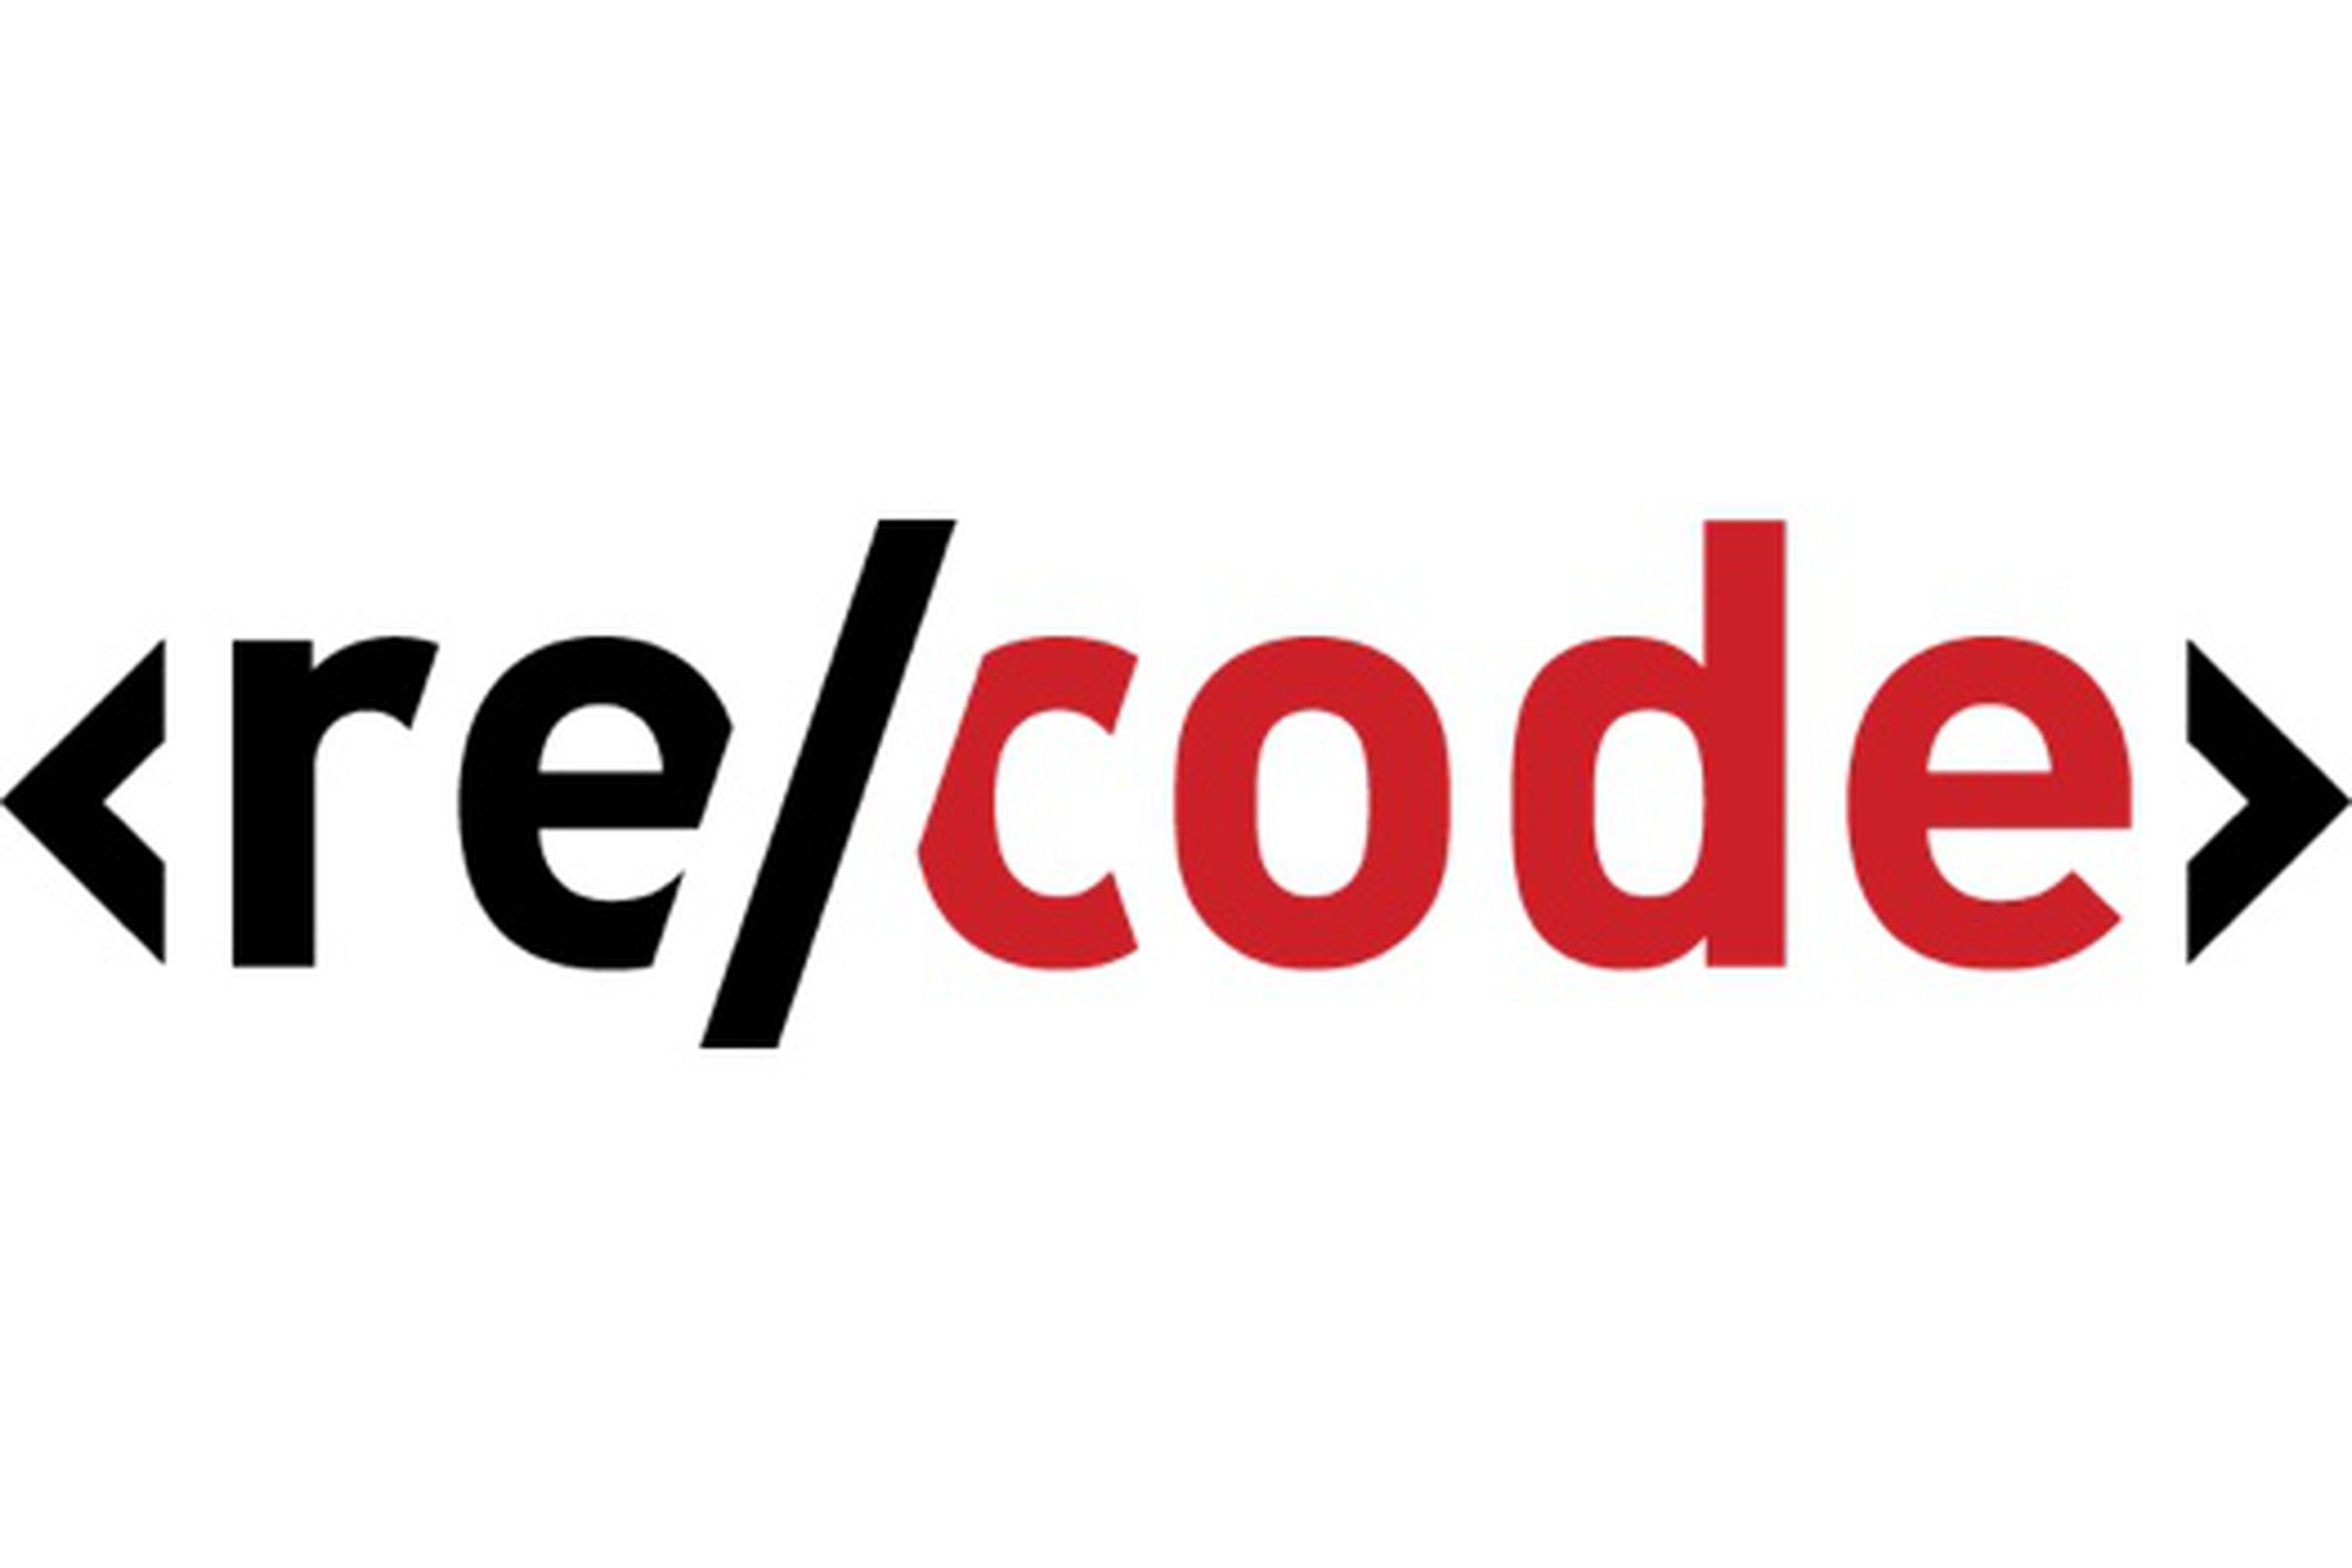 recode logo 1